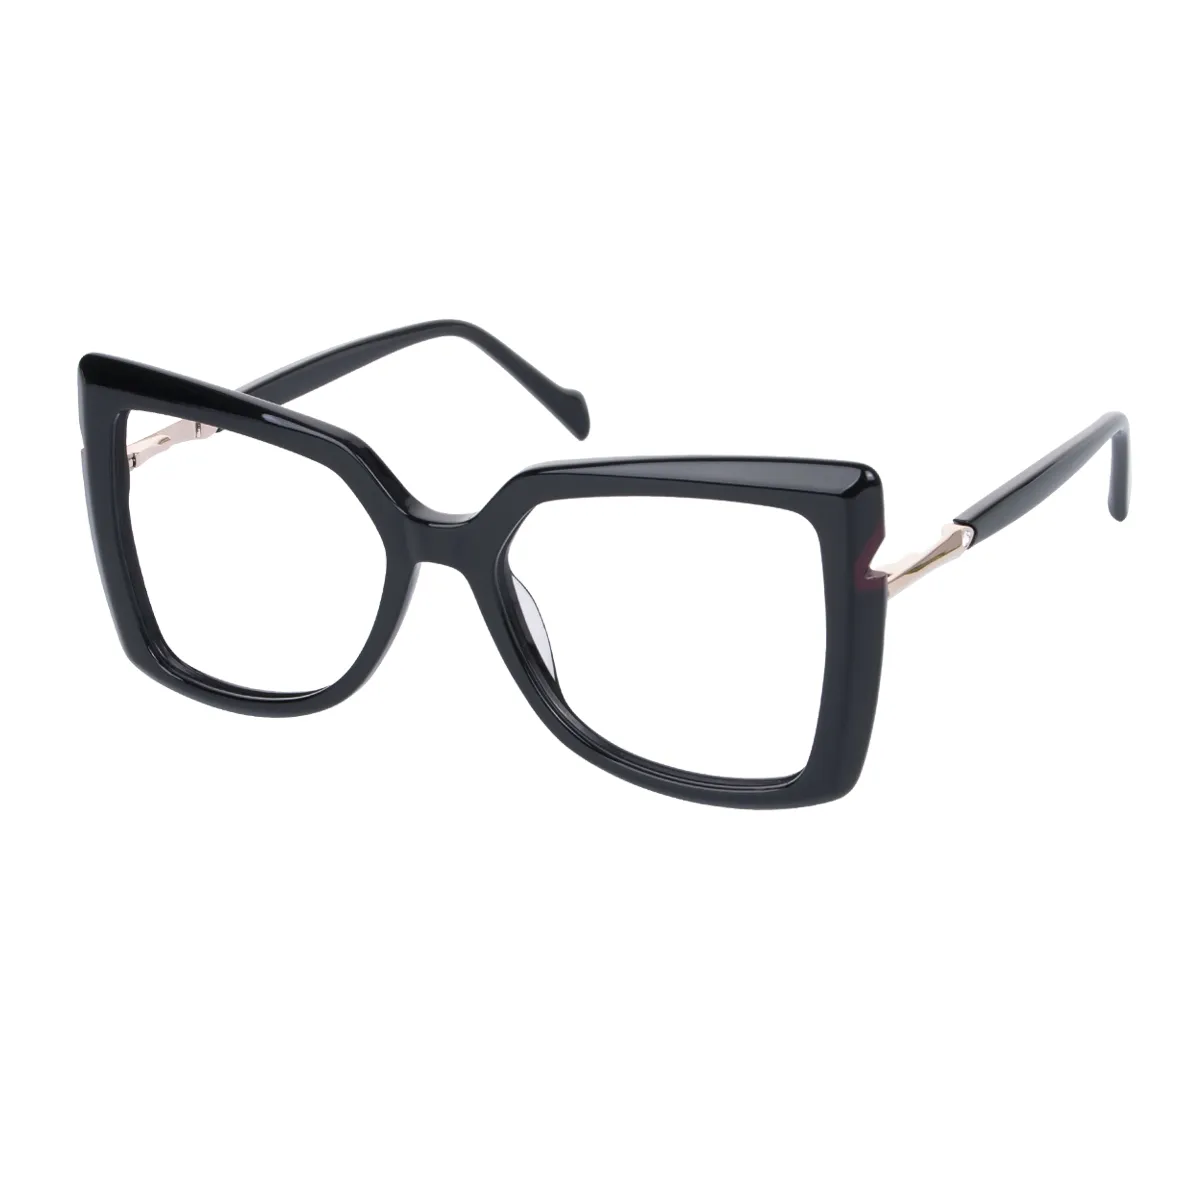 Sophia - Square Black Glasses for Women